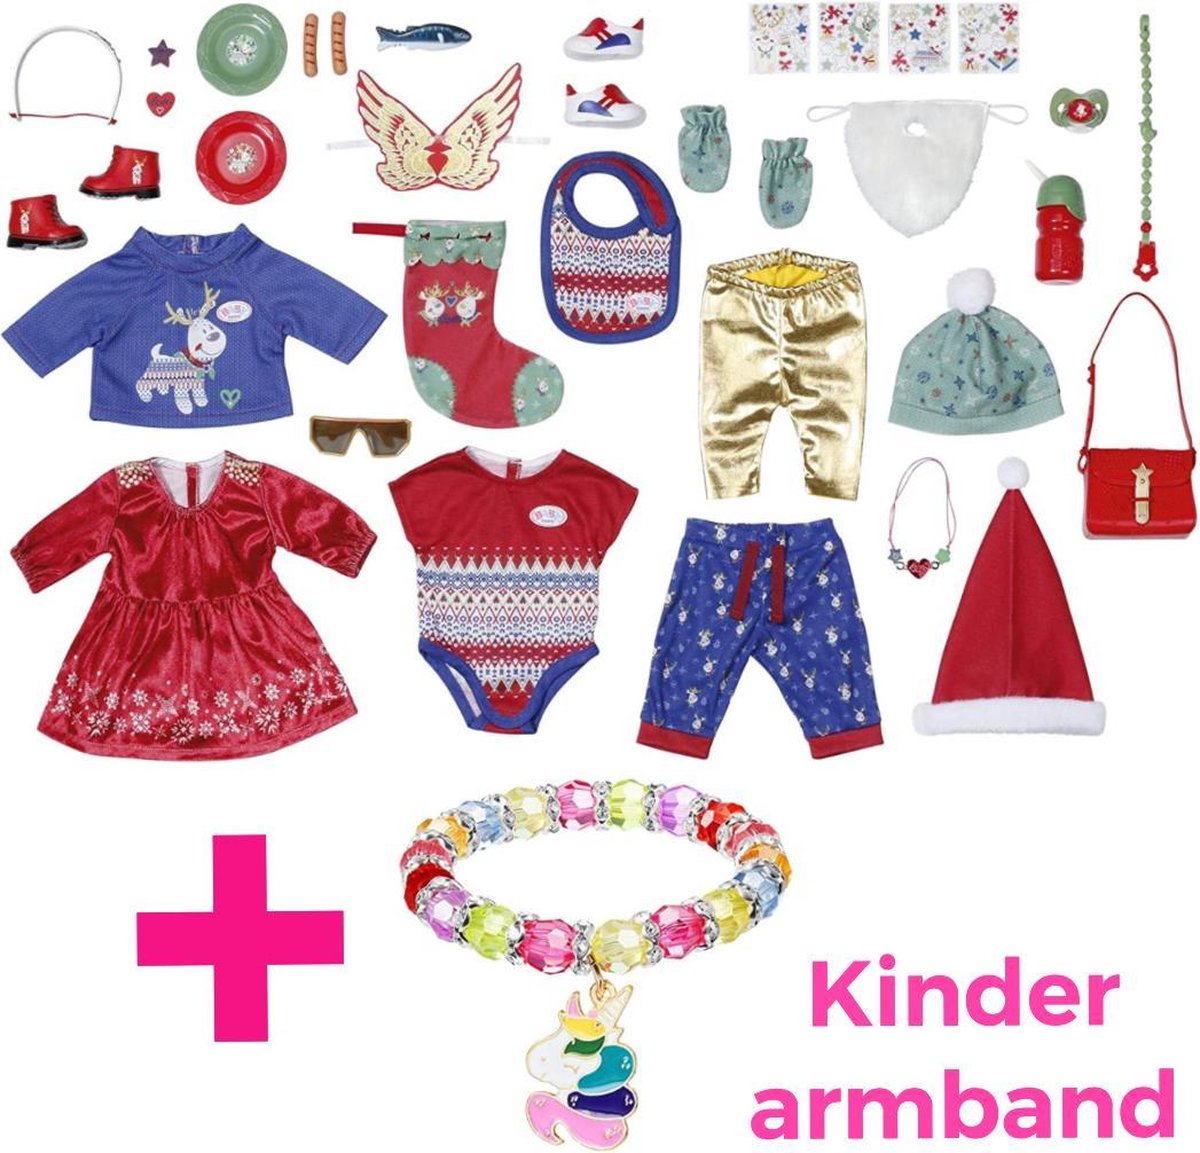 ZAPF Creation BABY born, inclusief kinder armband - Adventskalender - Sinterklaas - kerstmis - verjaardag